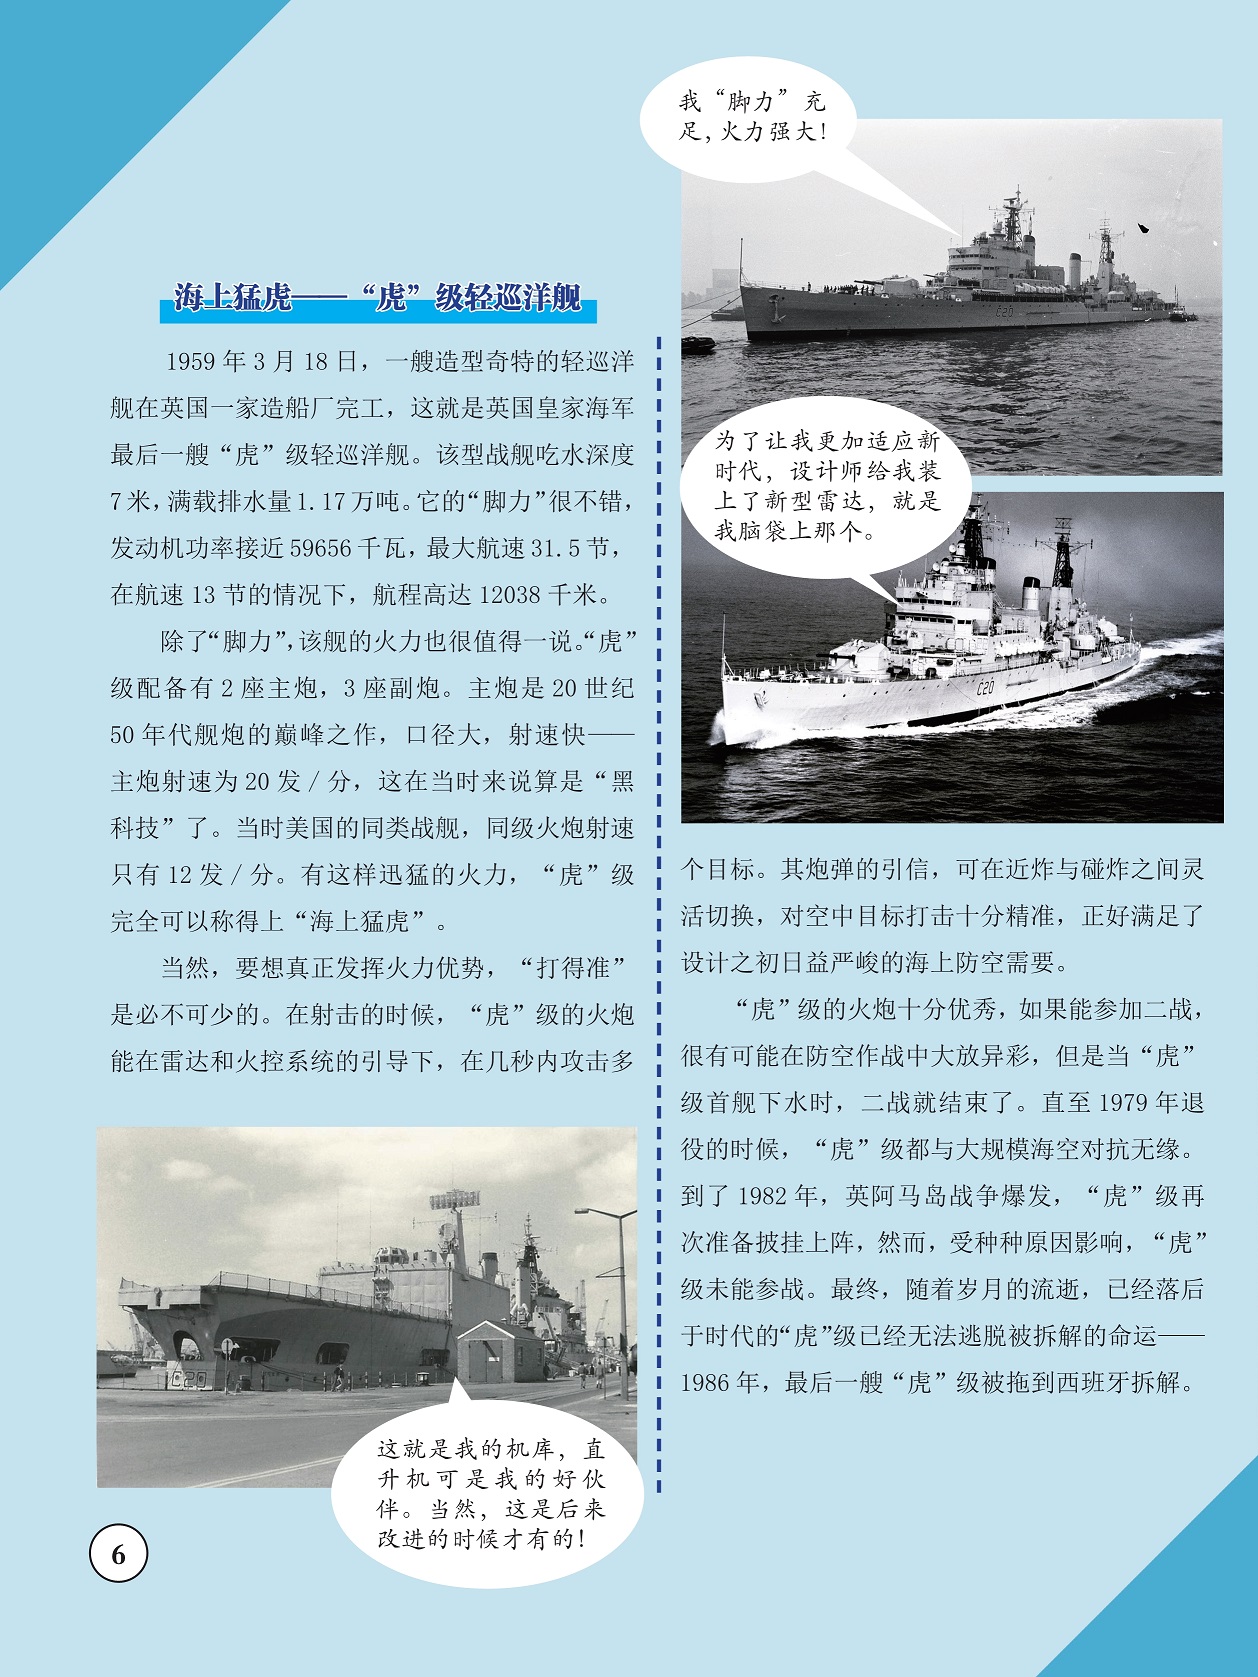 海上猛虎——“虎”级轻巡洋舰,“虎”级的火炮十分优秀